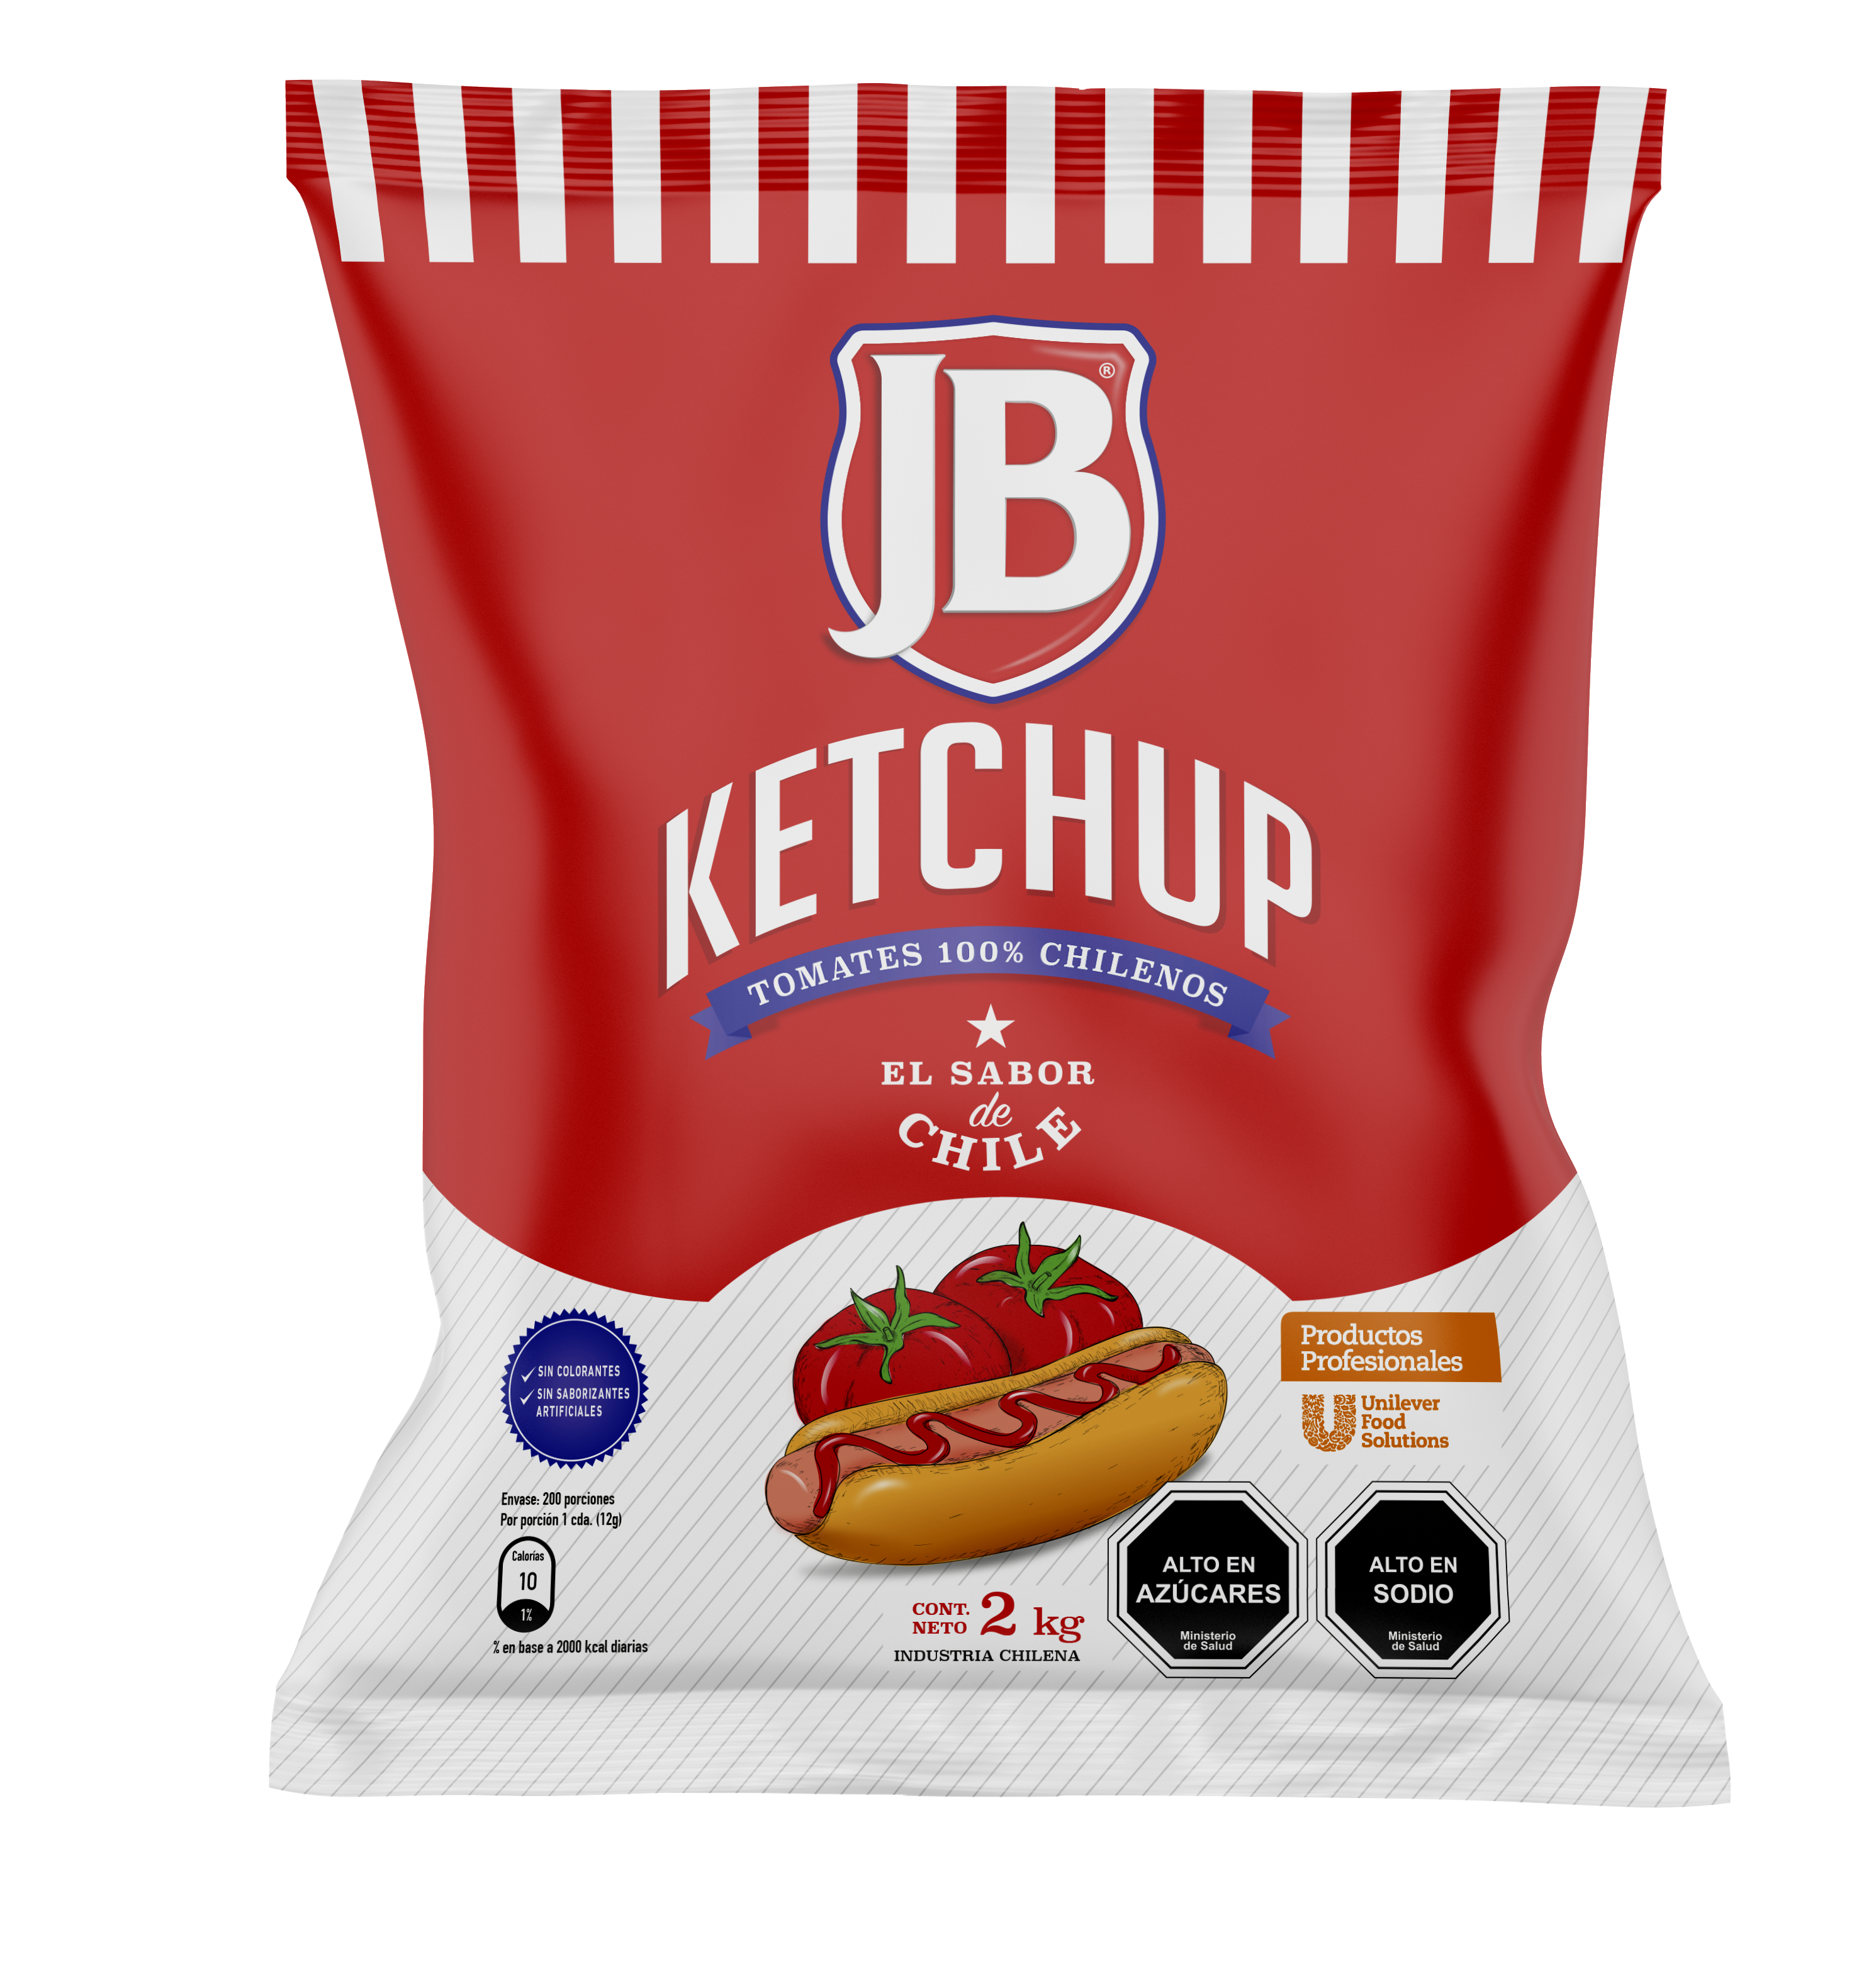 Ketchup JB 2KG - Ketchup JB, el sabor de Chile!